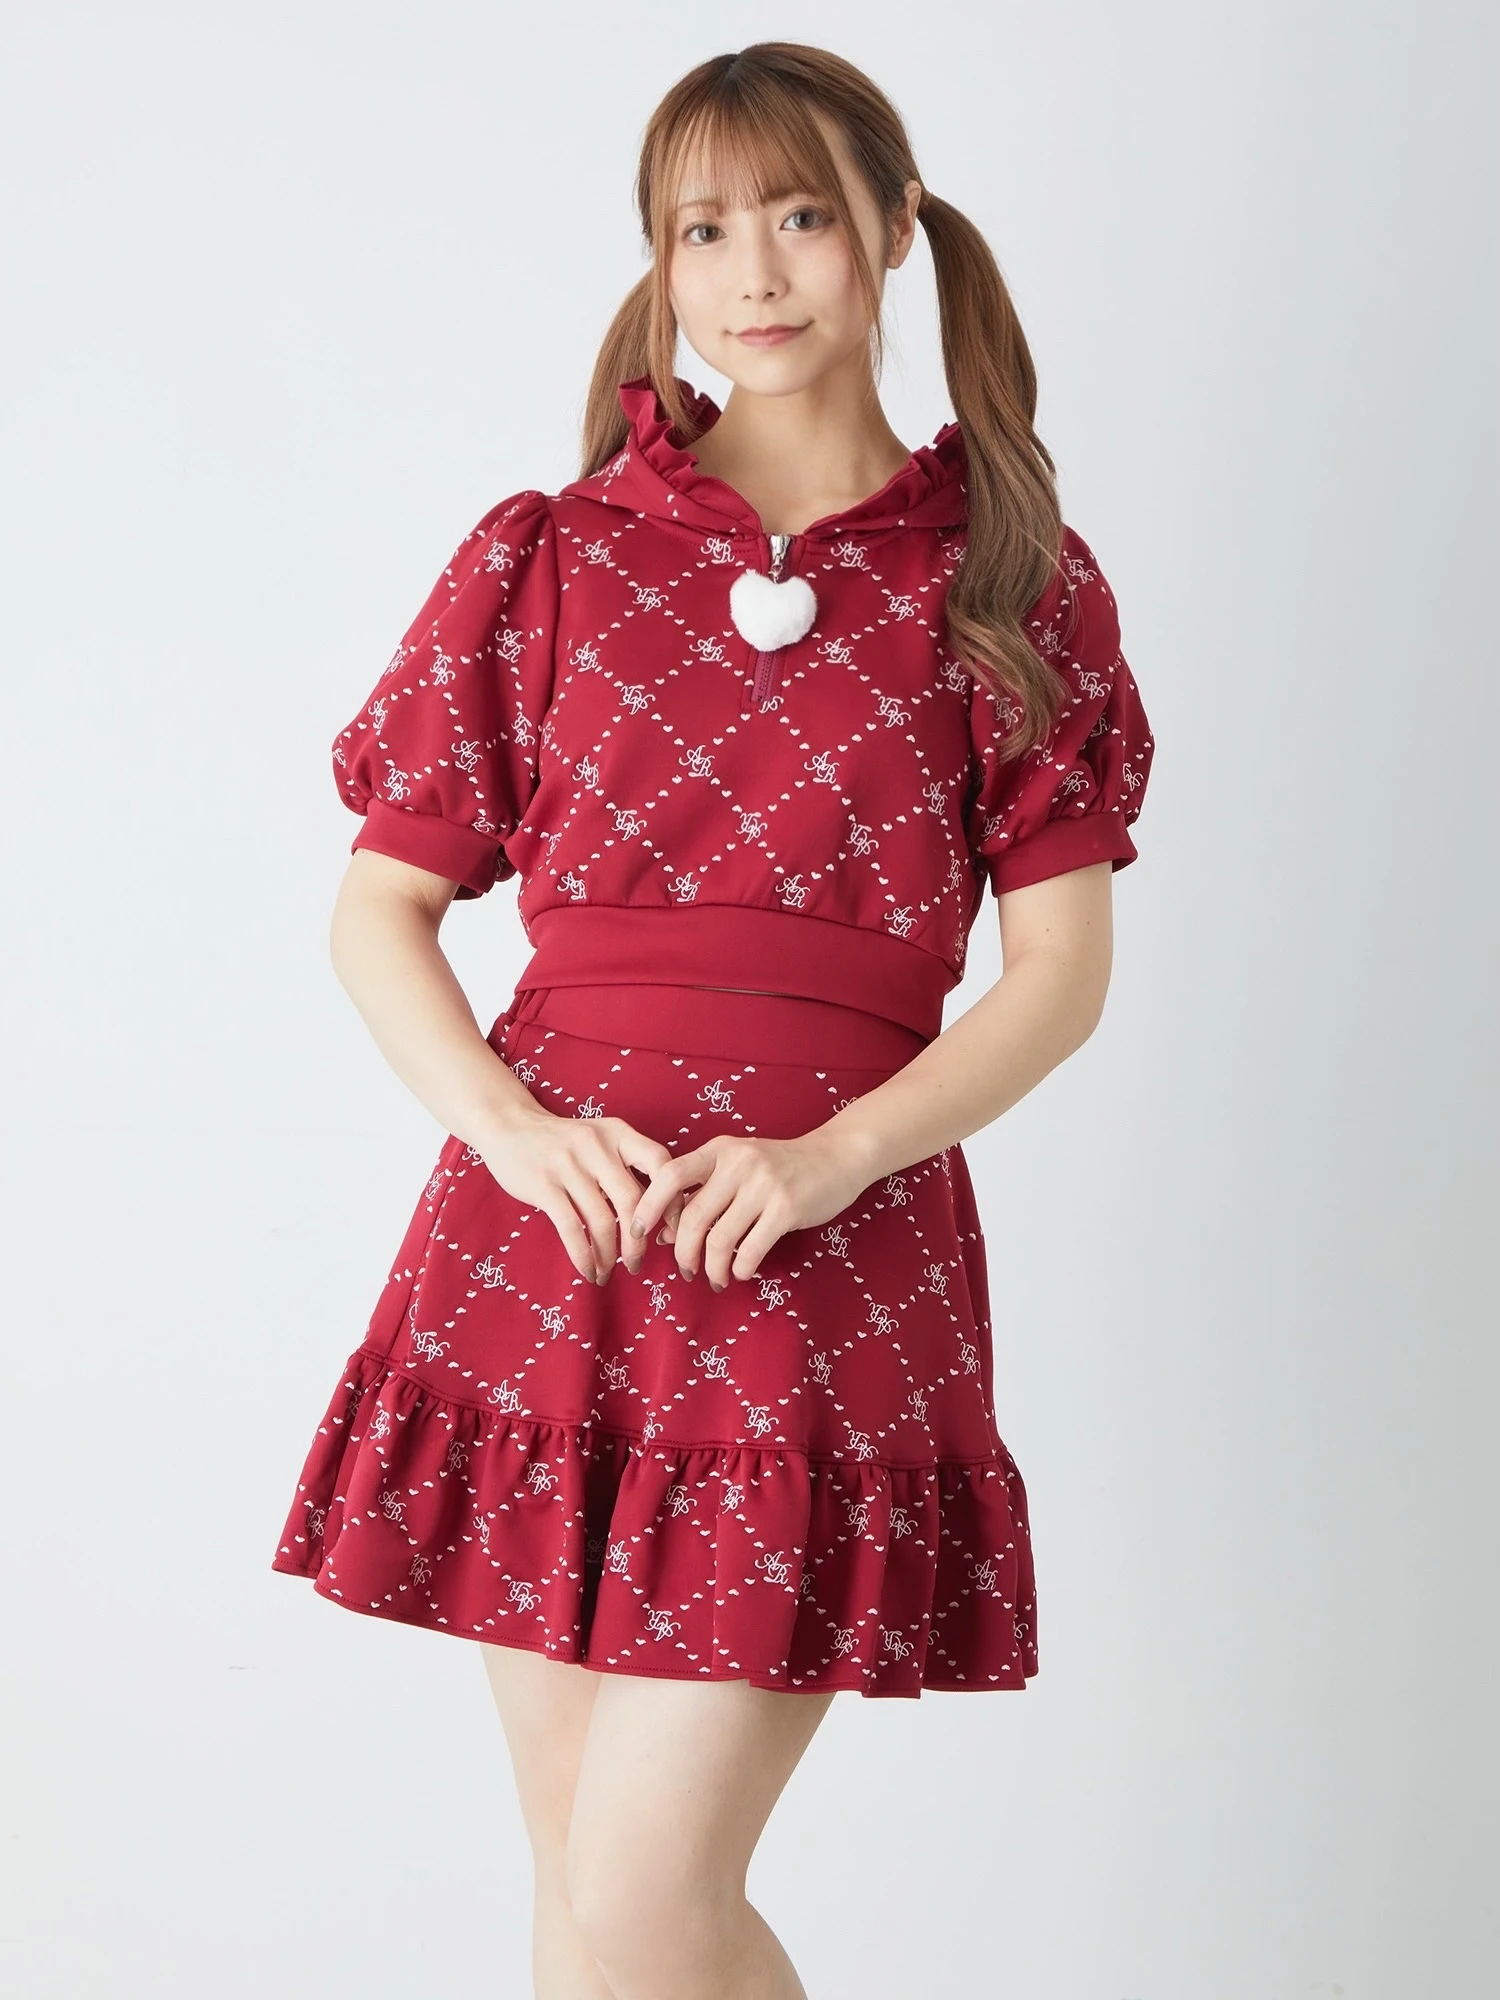 モノグラム刺しゅうSK - Ank Rouge(アンクルージュ)のスカート 